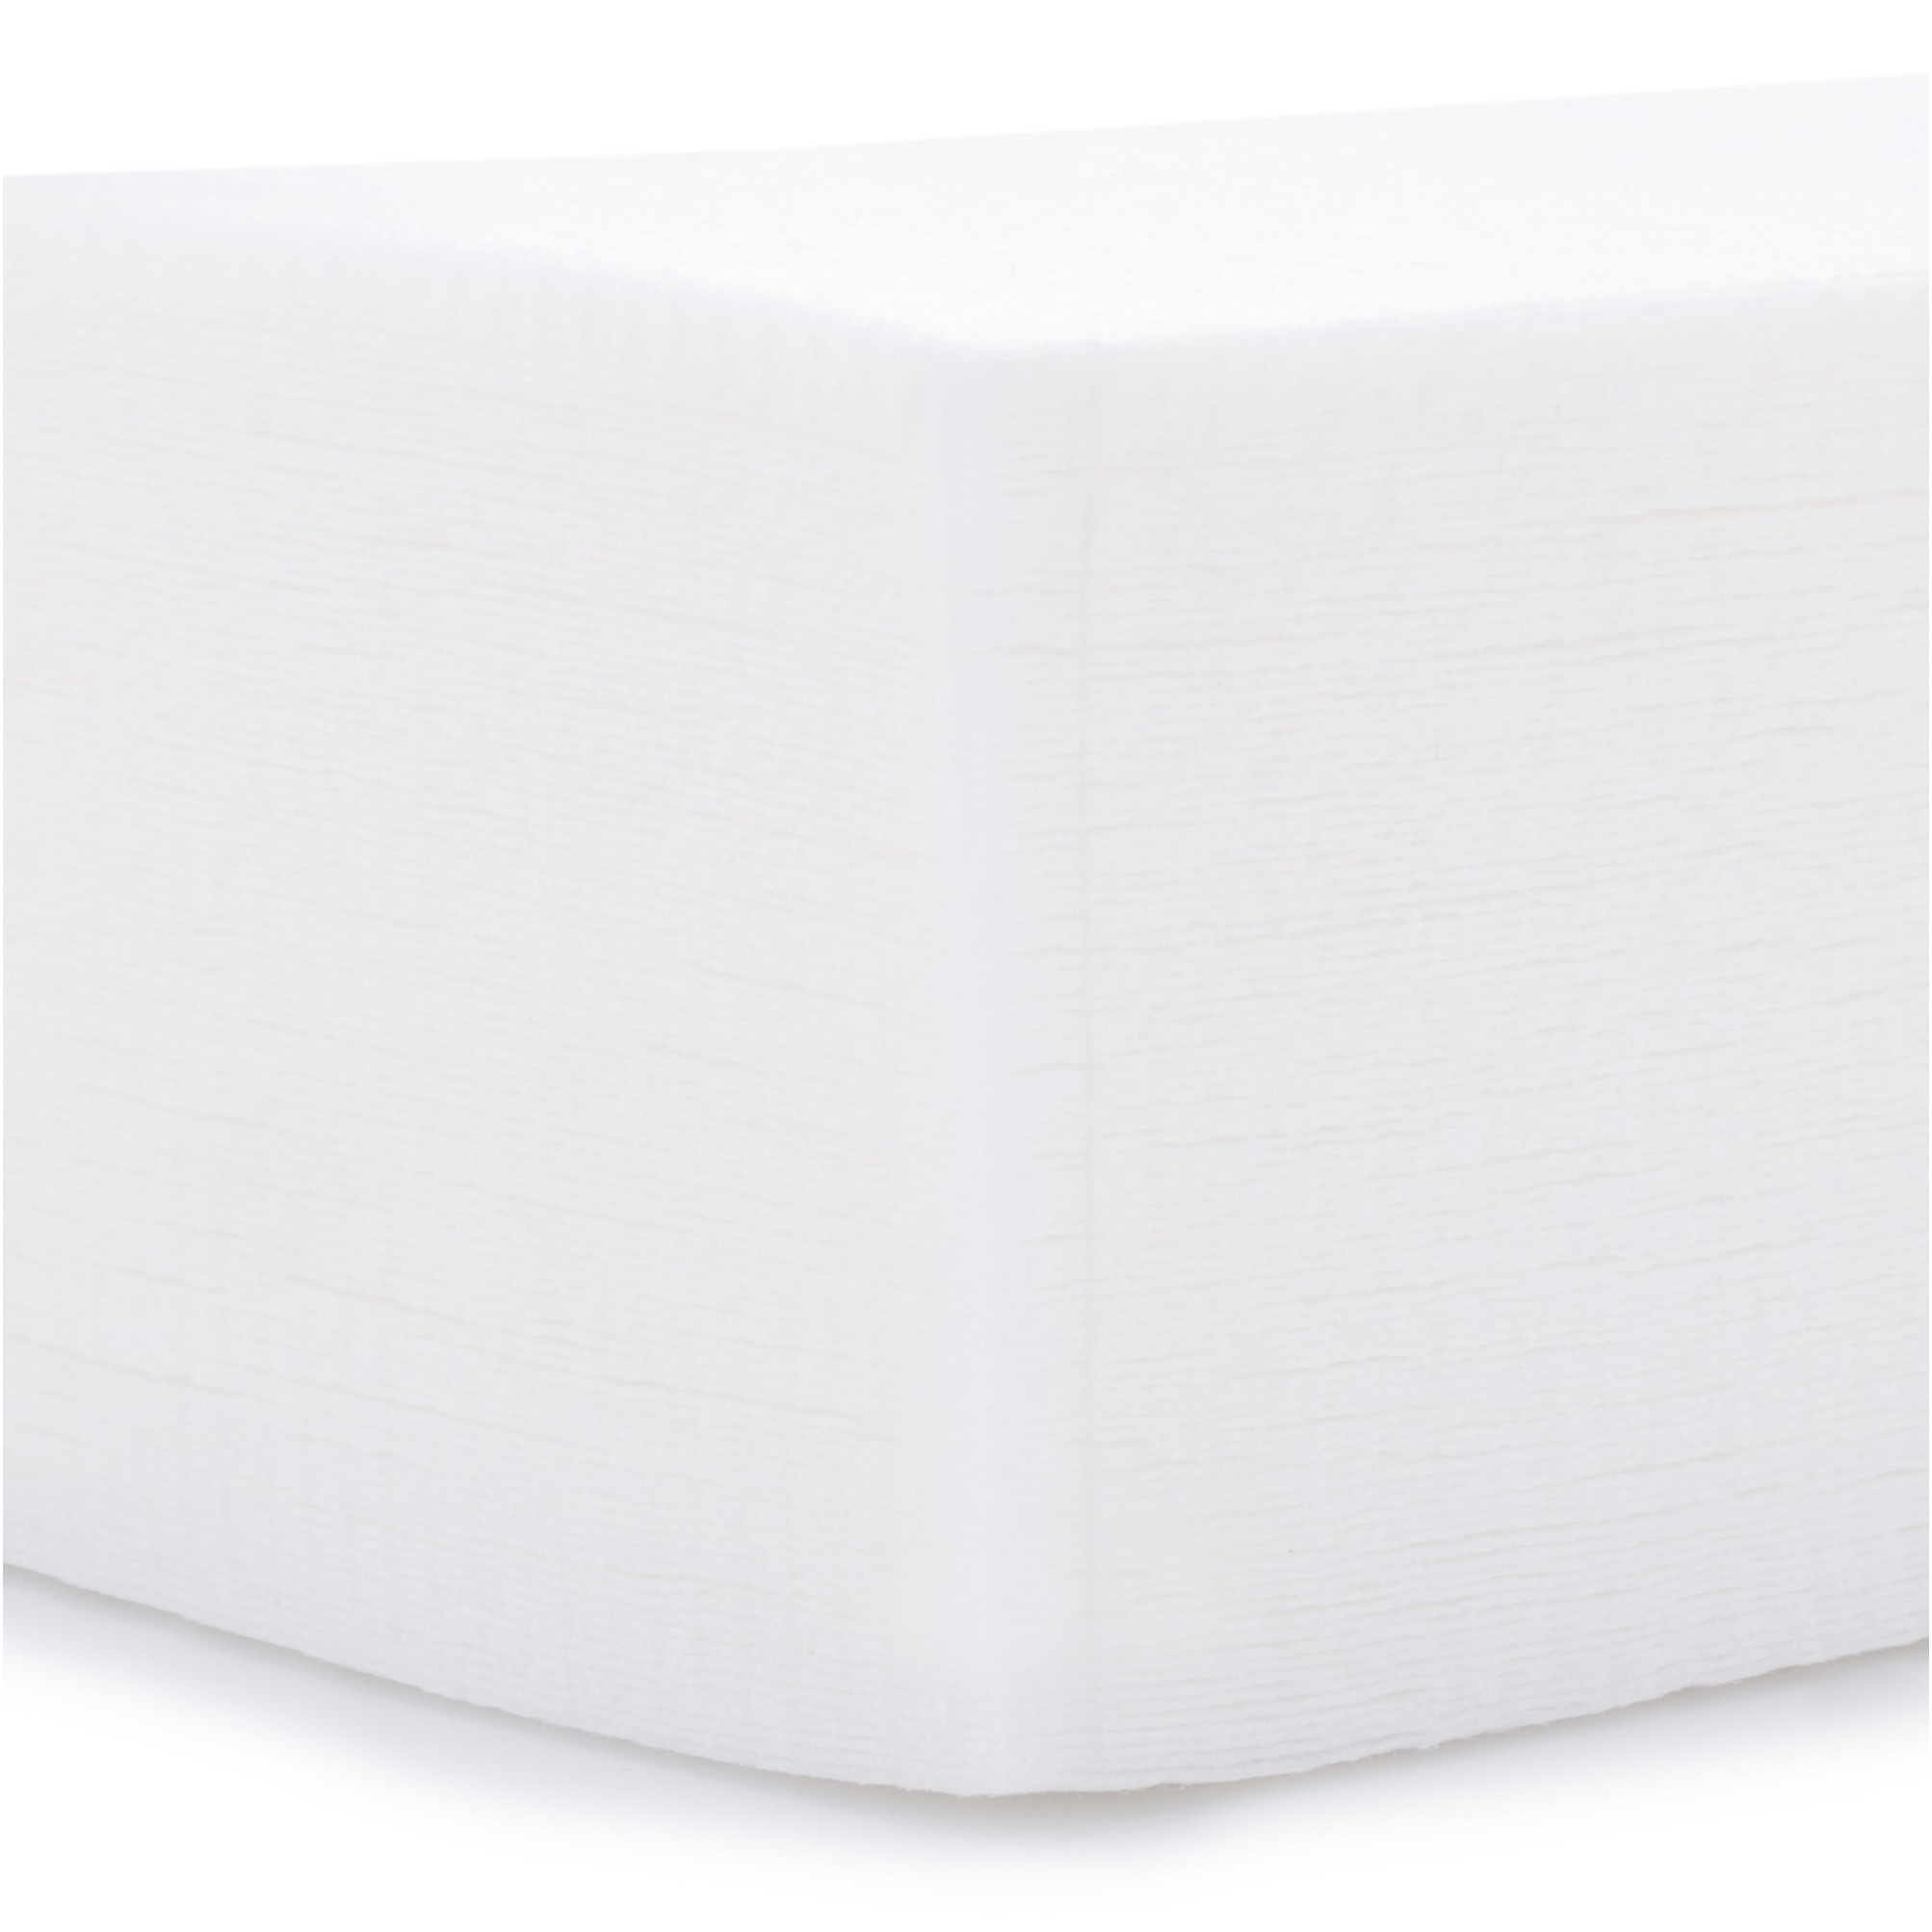 Paski Do Depilacji Włókninowe – Cięte – Białe – 7 cm x 21 cm (100 szt.)